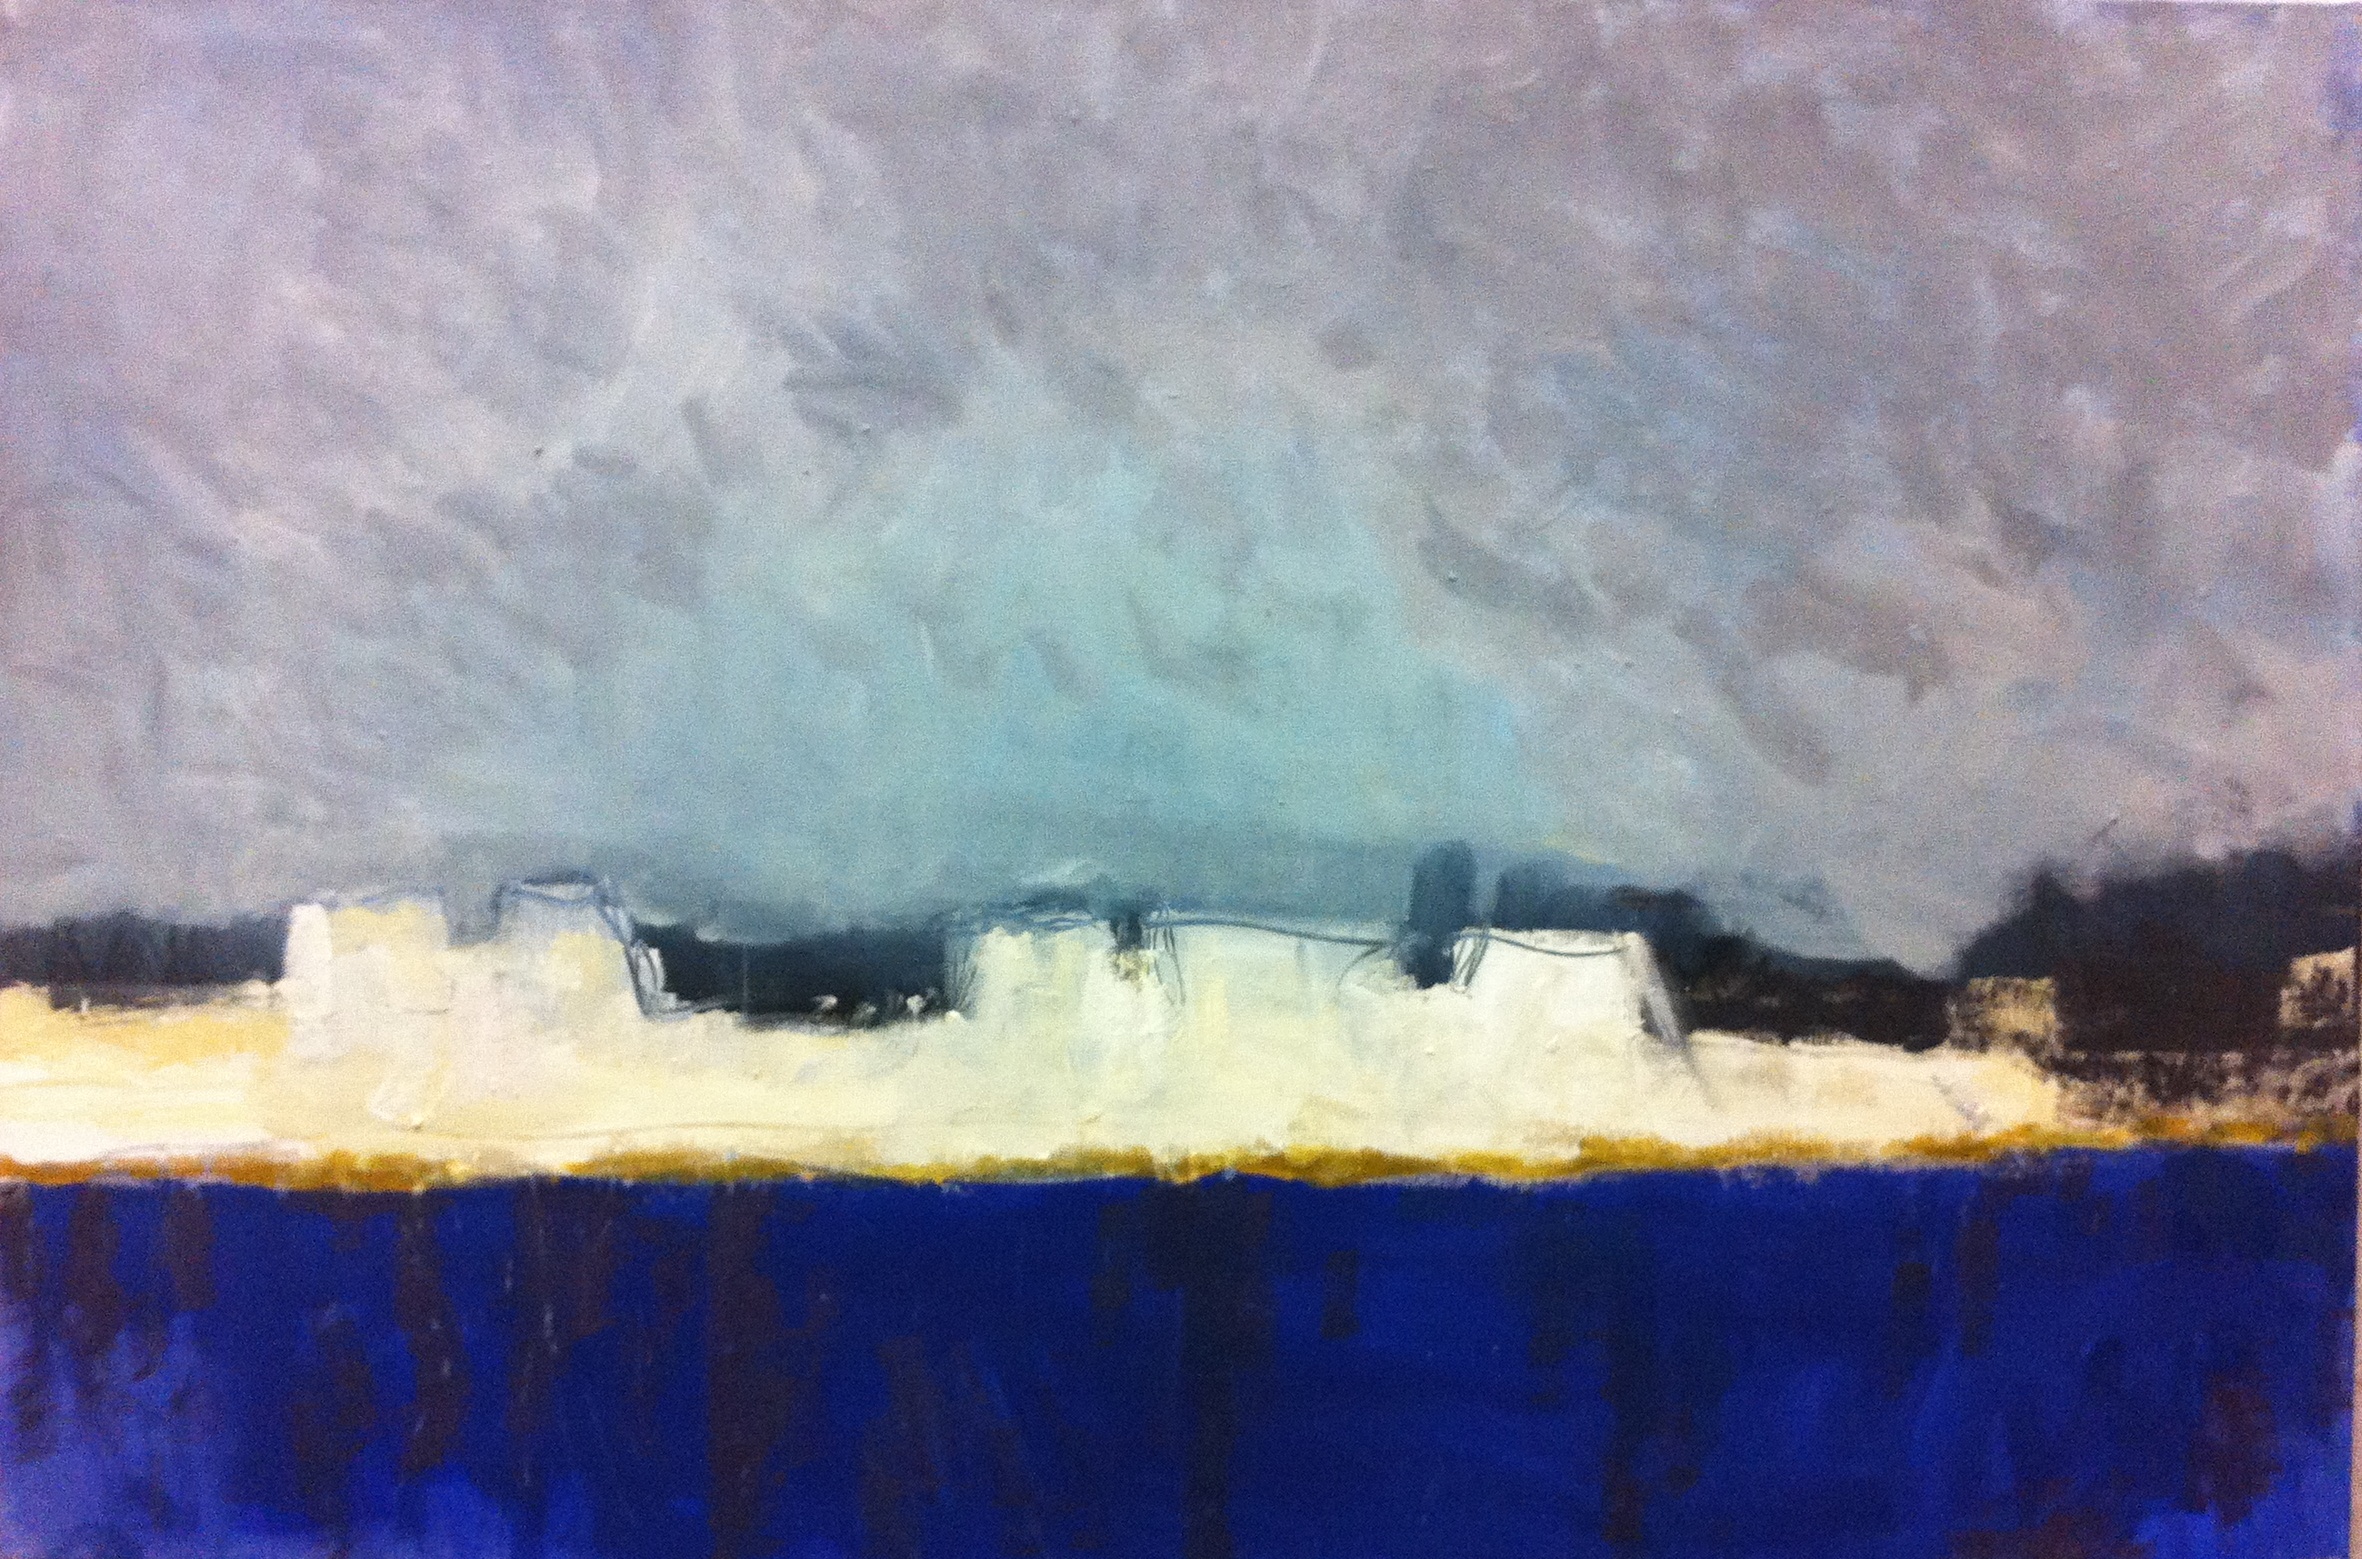 N°61 - Aigues-Mortes - Acrylique sur toile - 97 x 146 cm - 19 décembre 2012